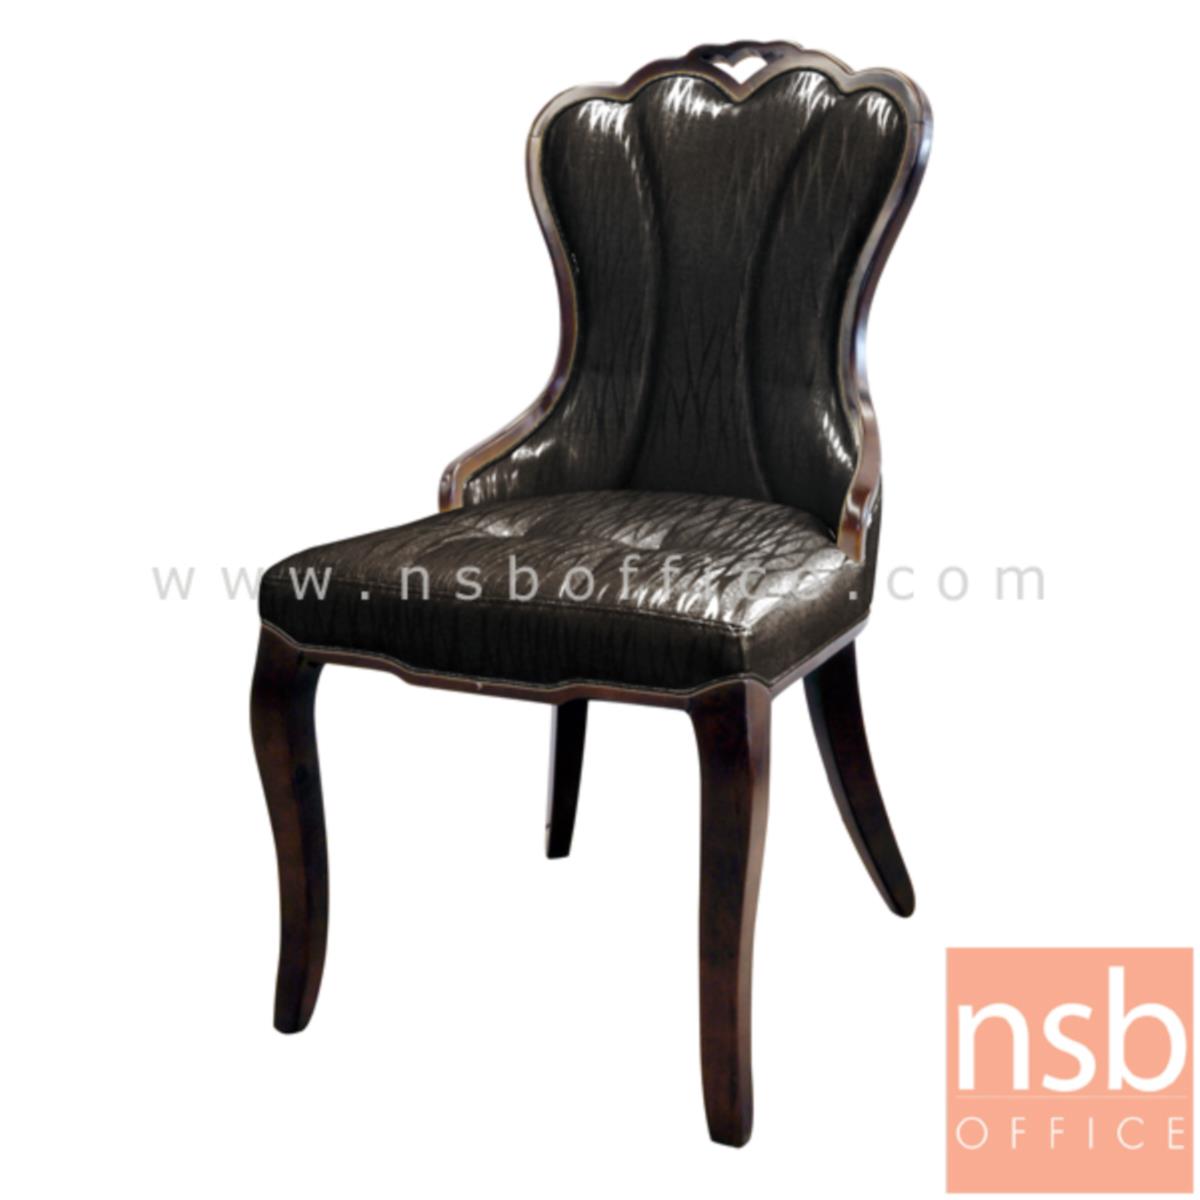 B22A115:เก้าอี้ไม้ที่หนังหุ้มหนังเทียม รุ่น FST-1213 ขาไม้